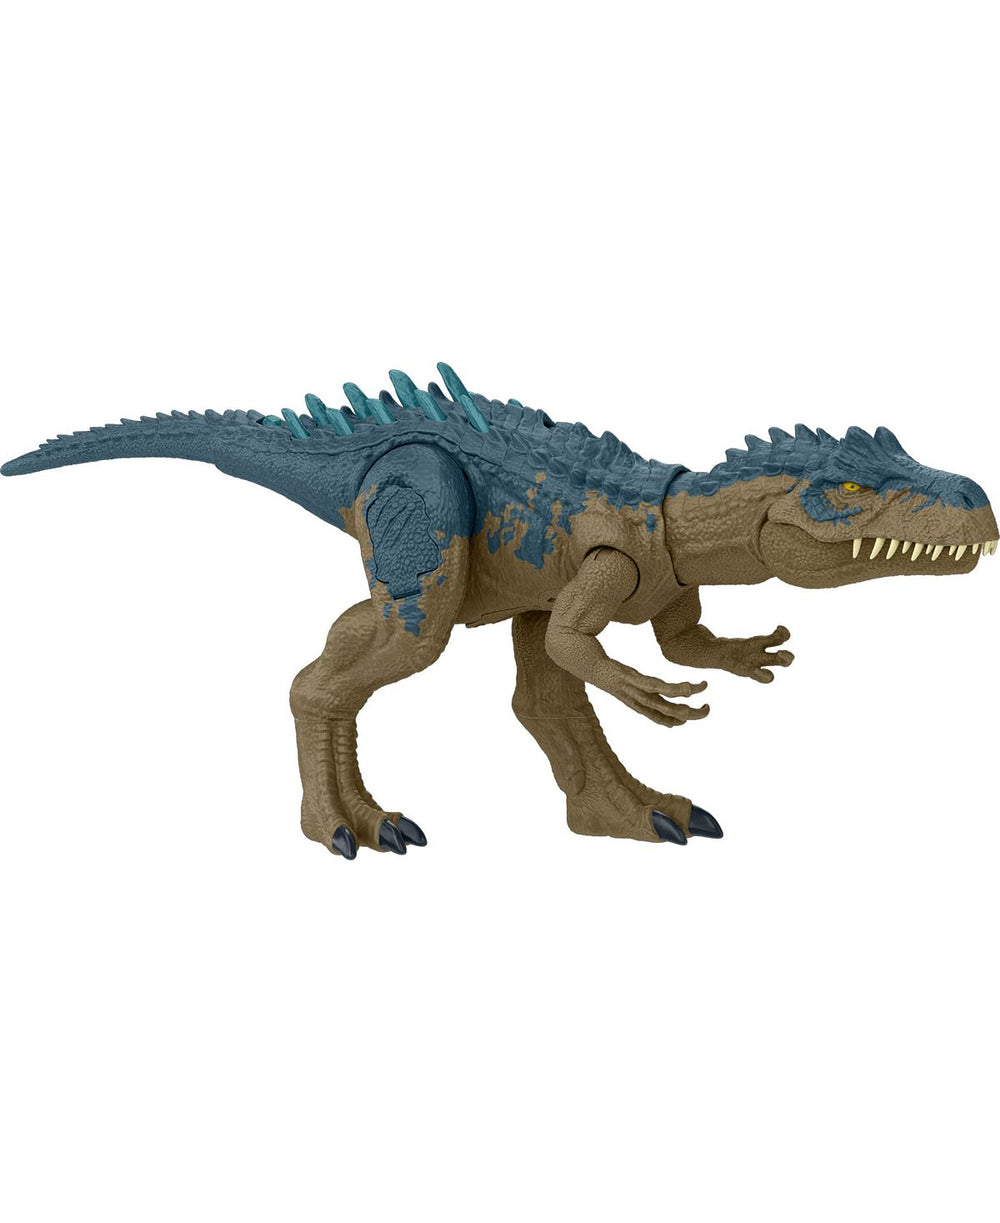 Jurassic World Allosaurus Dinosaur Toy with Interactive Battle Features